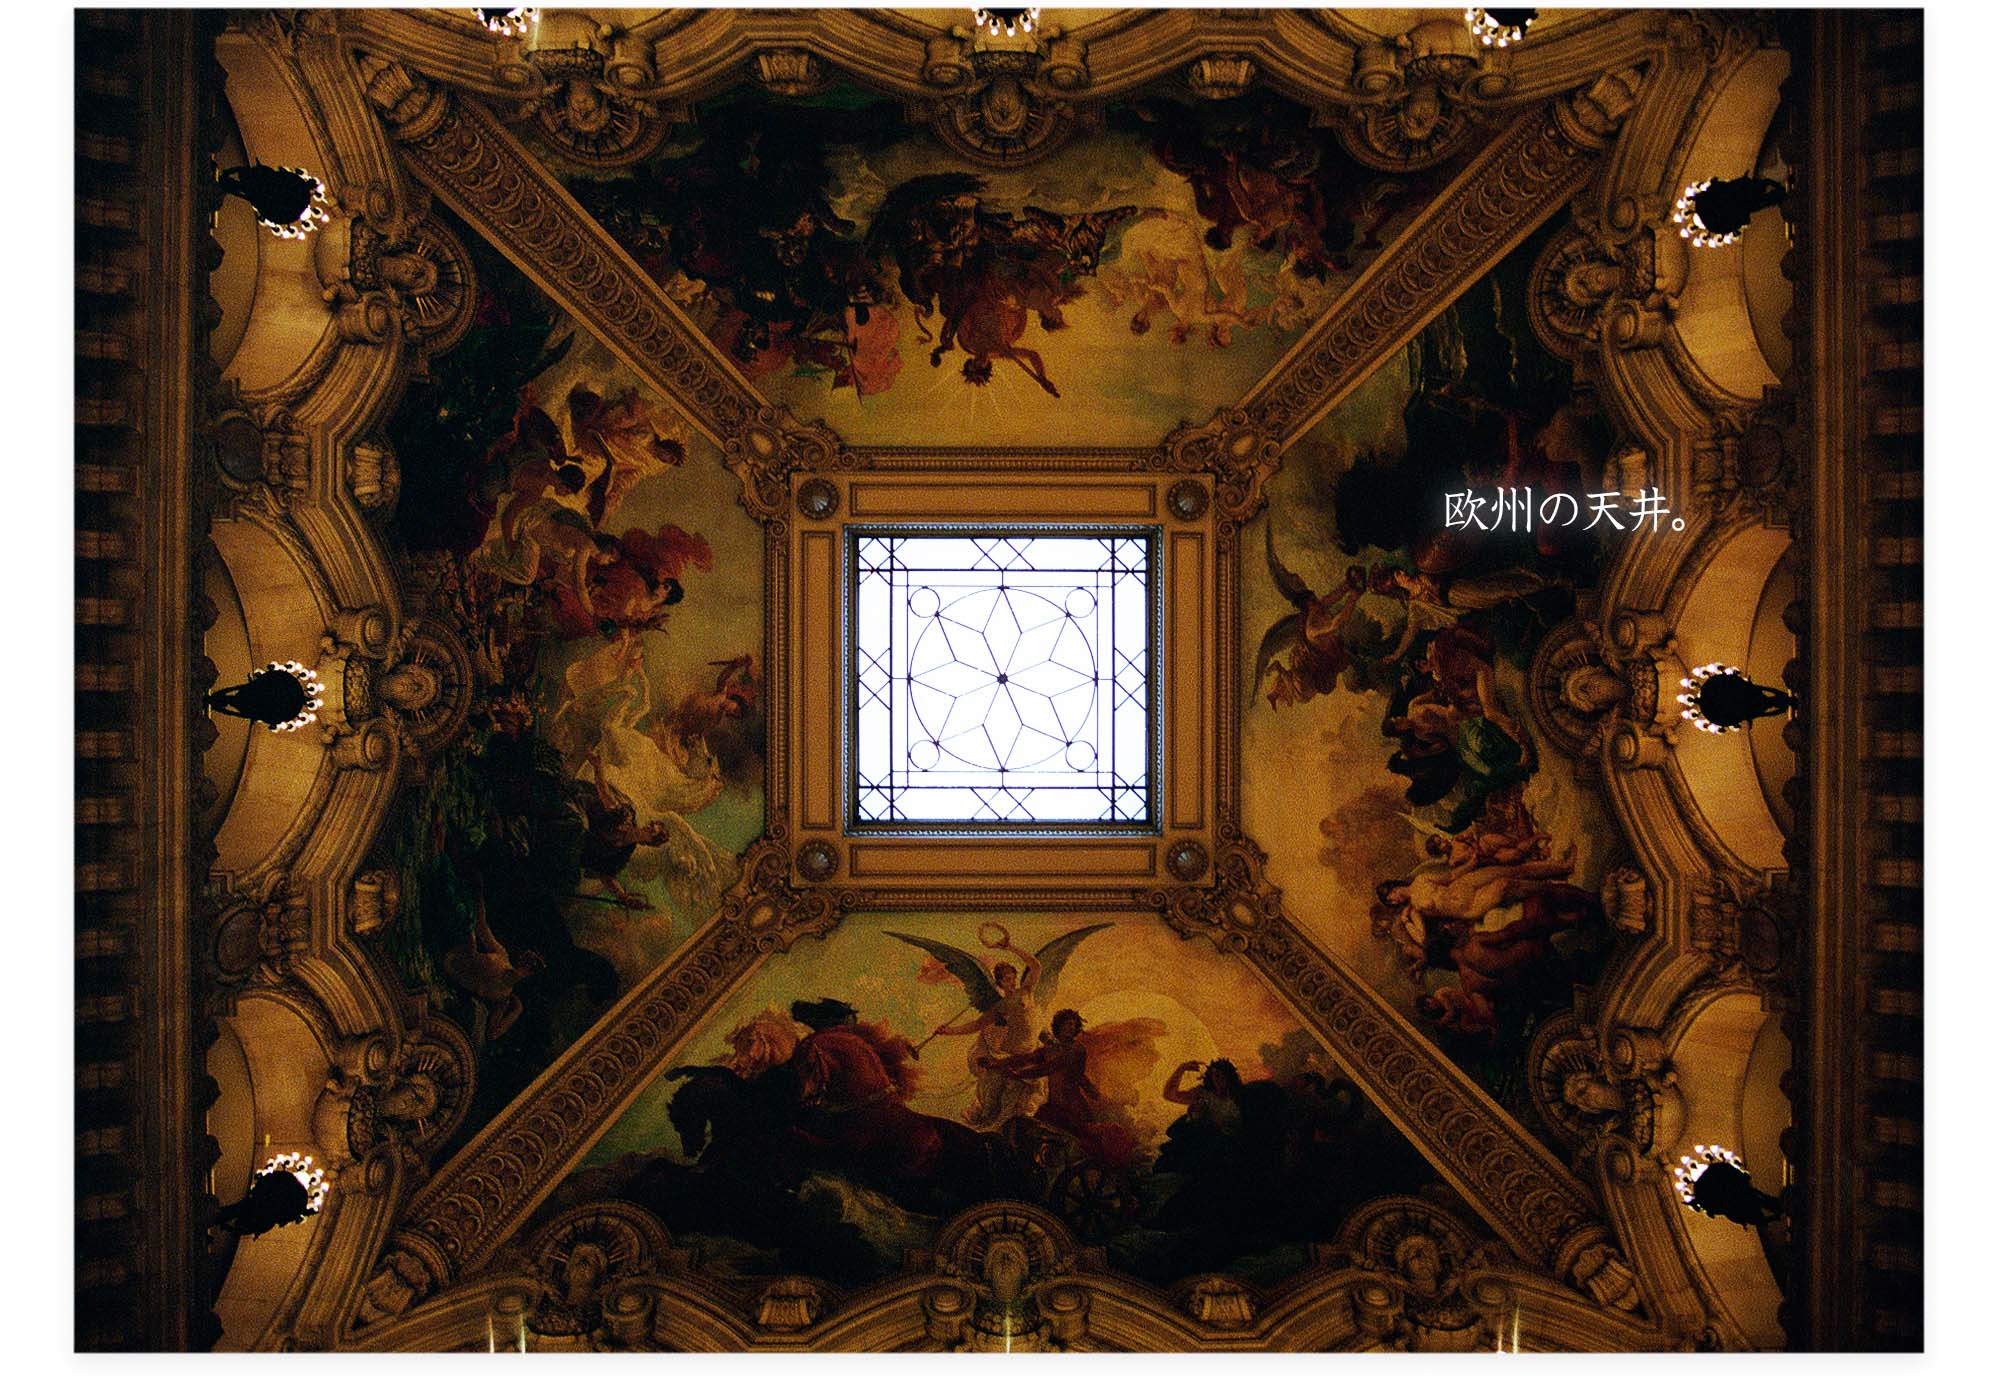 20121030b_欧州の天井